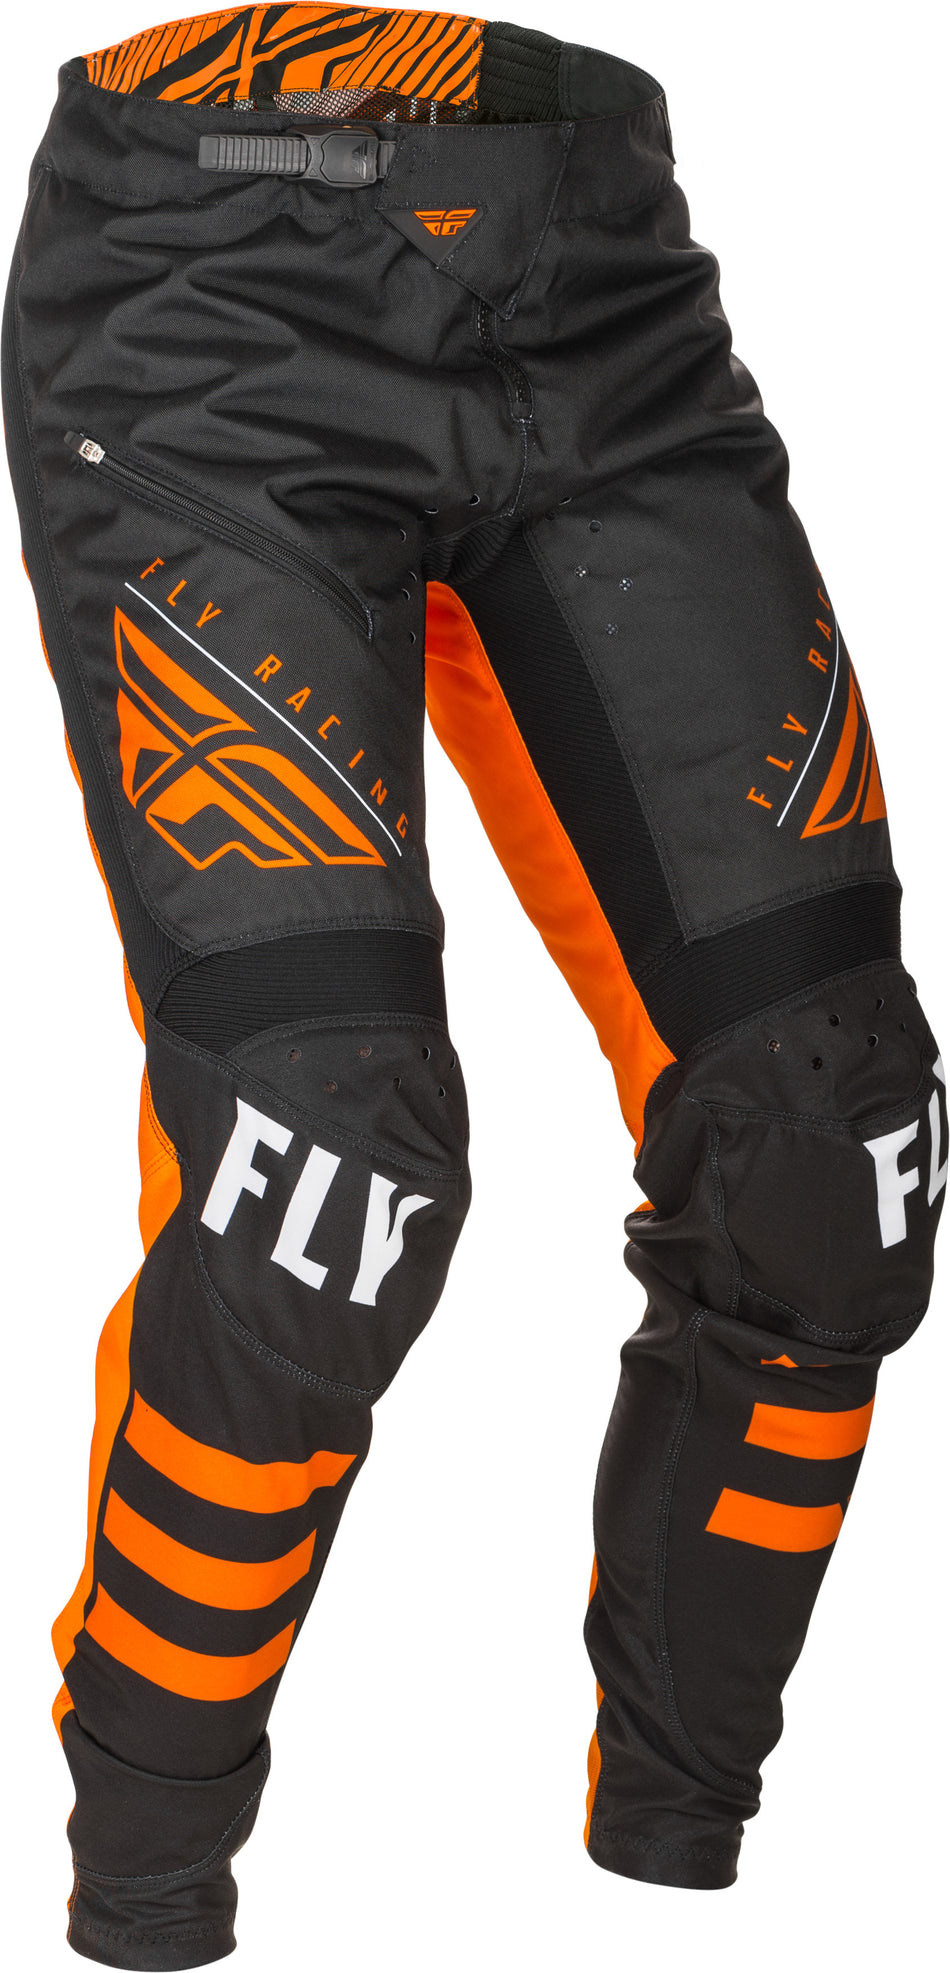 FLY RACING Kinetic Bicycle Pants Black/Orange Sz 32 373-04732